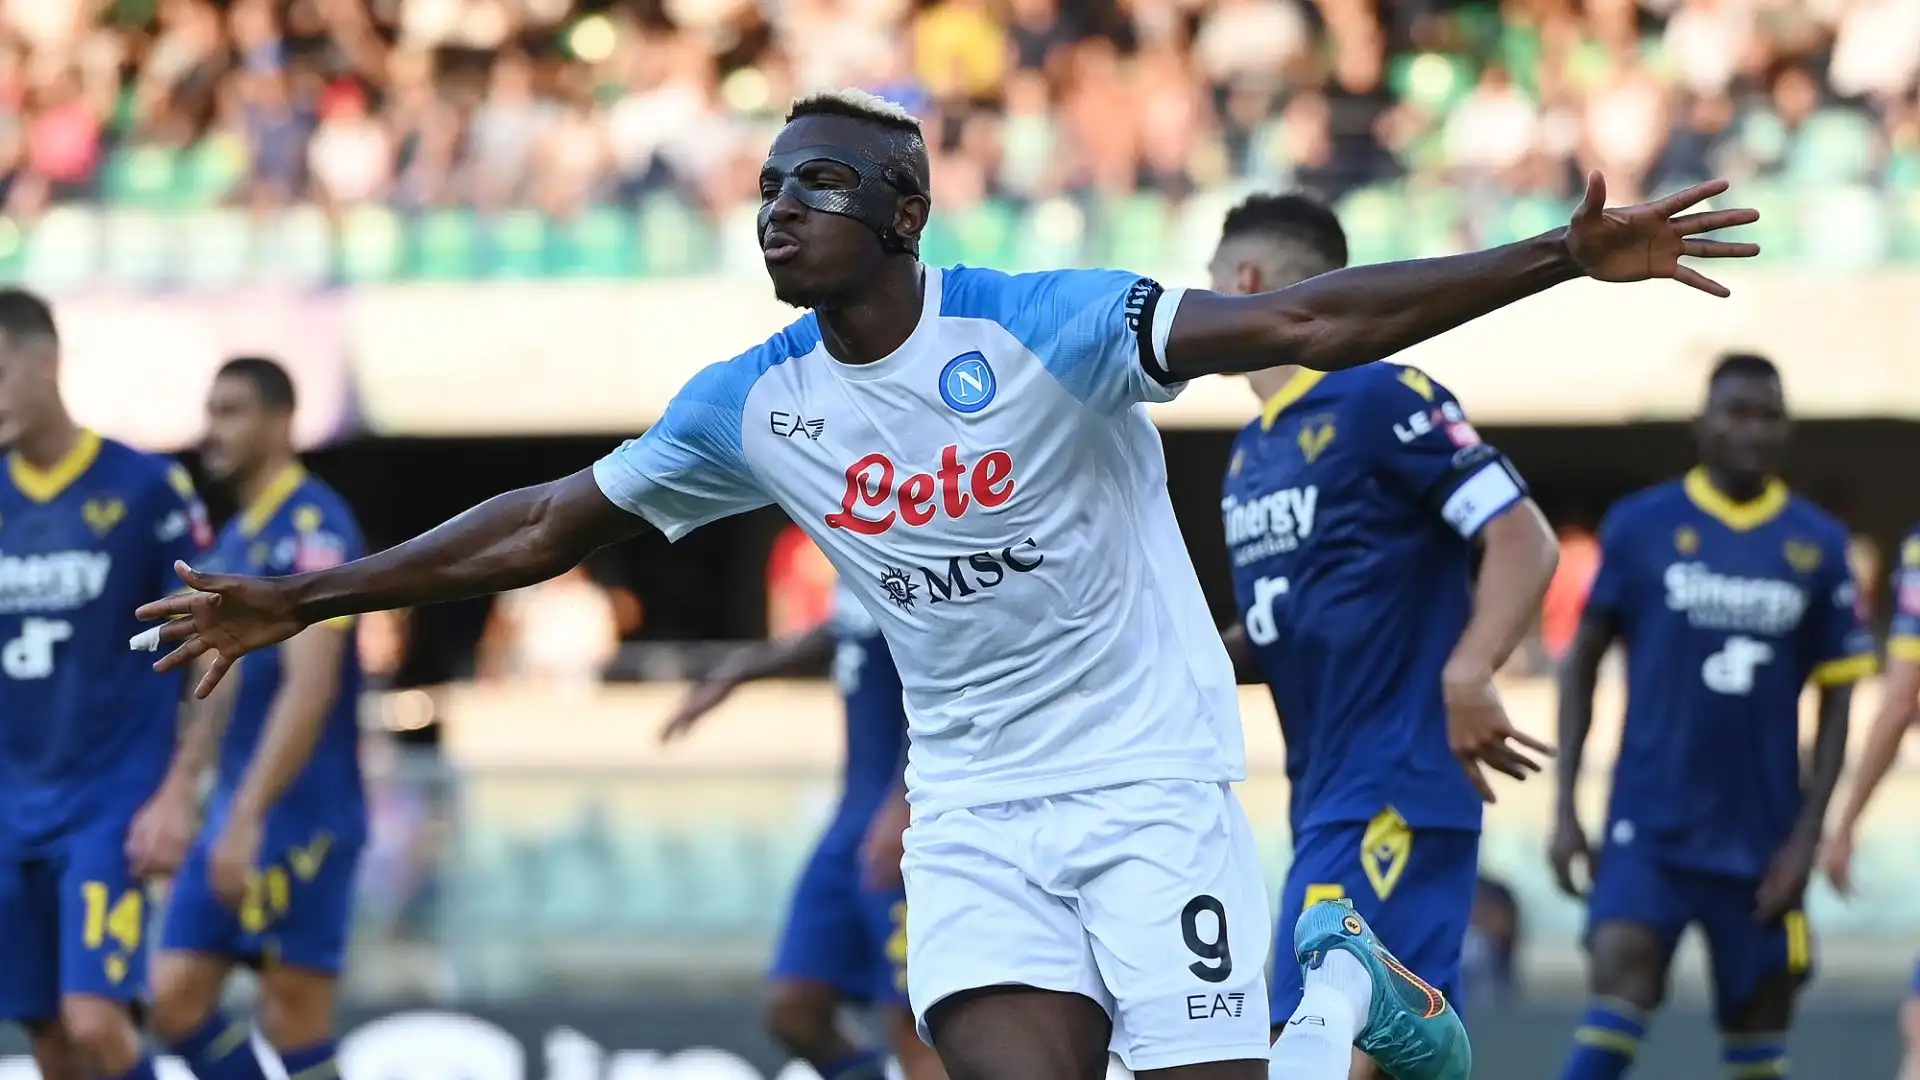 Debutto in grande stile del Napoli in Serie A: a Verona gli azzurri si sono imposti 5-2, a segno anche il bomber victor Osimhen